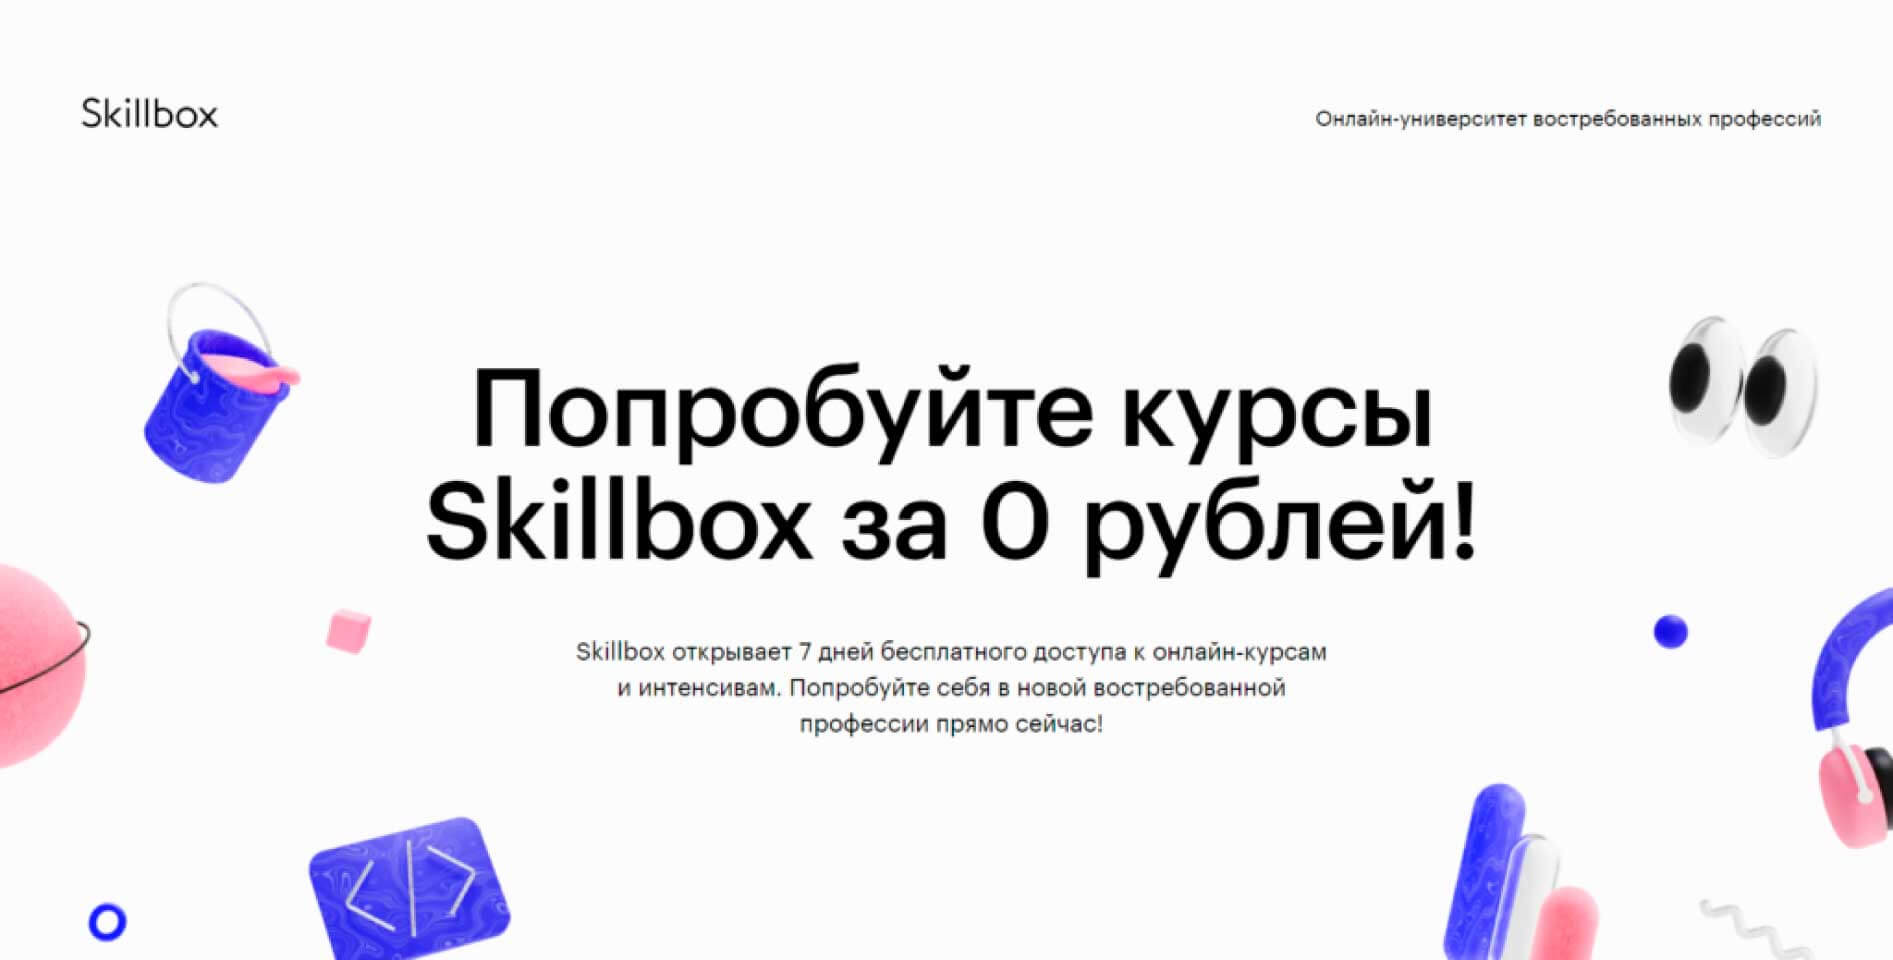 Skillbox бесплатно предоставляет доступ к 33 курсам